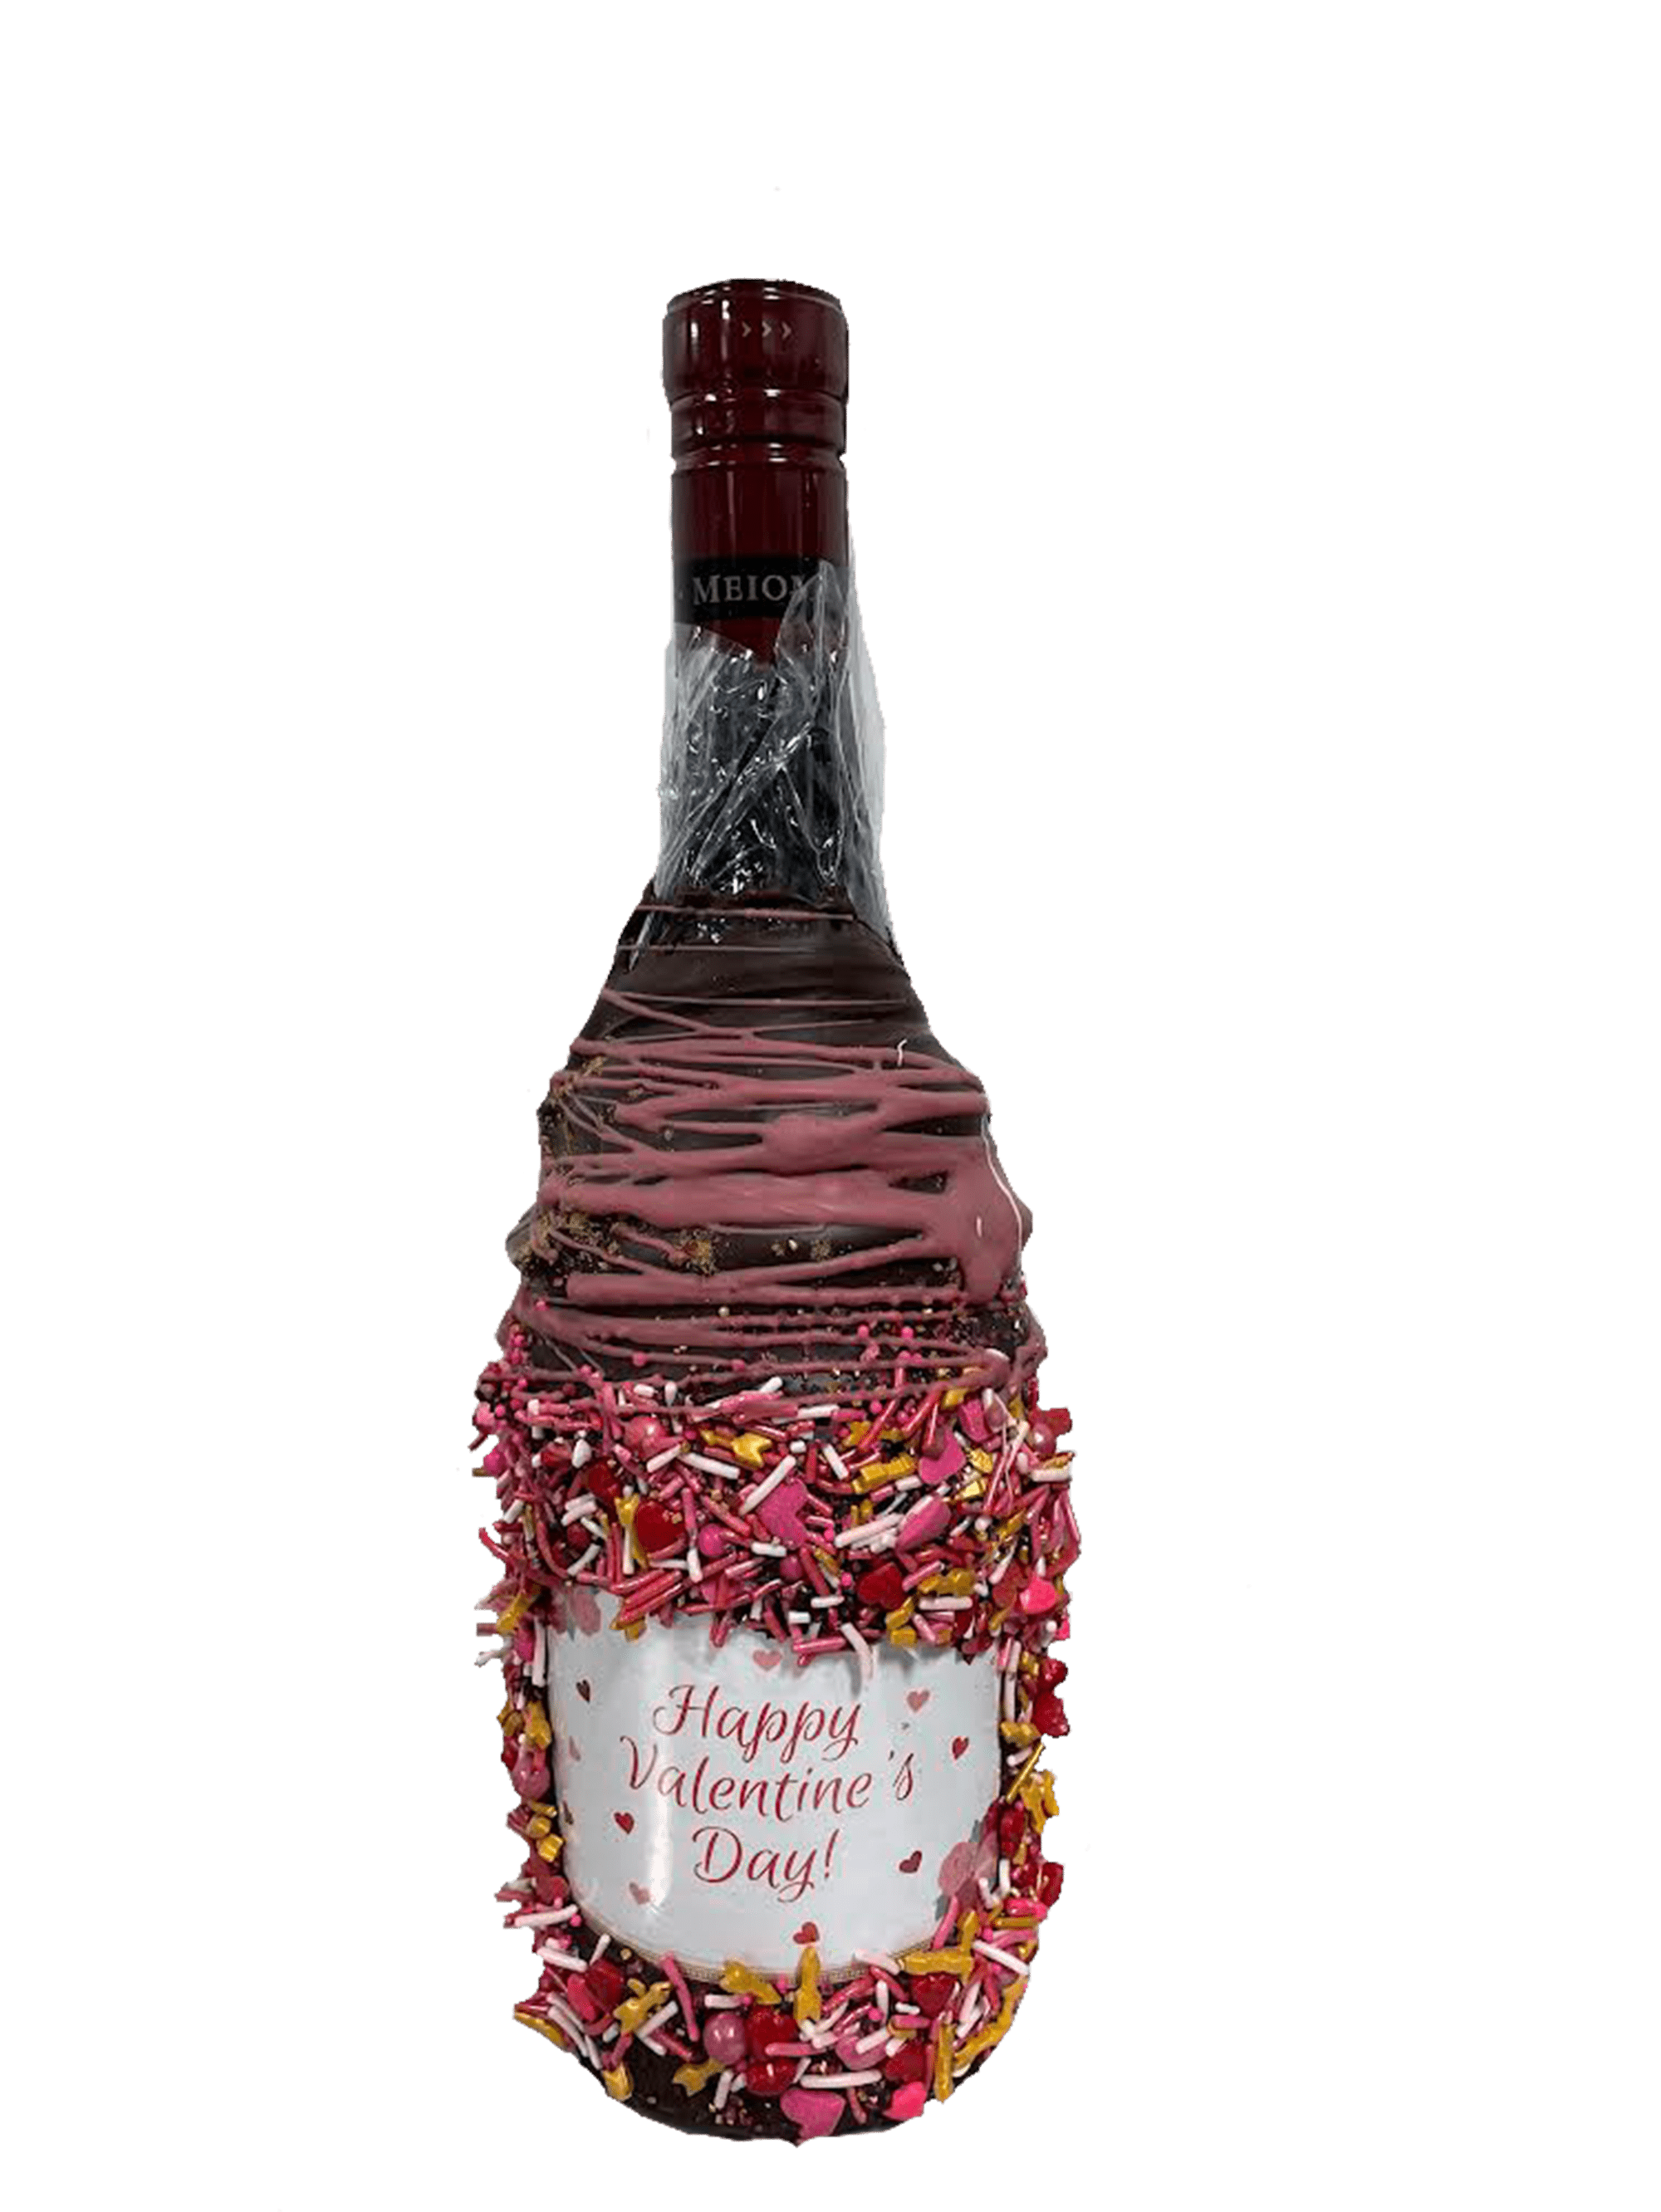 Meiomi Pinot Noir Valentine's Day